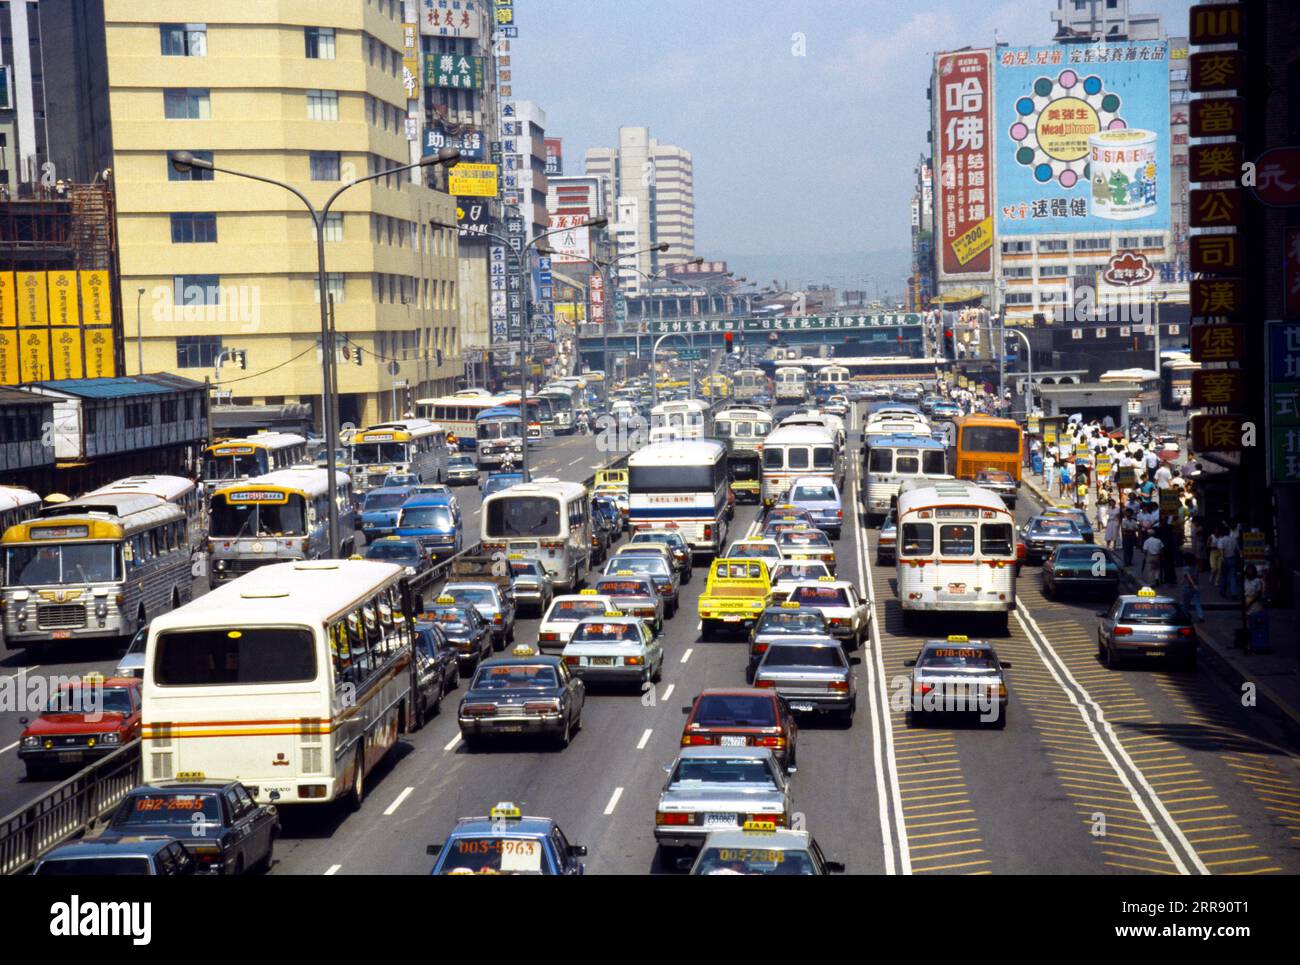 Taipei Taiwan City Traffic Jam Stock Photo